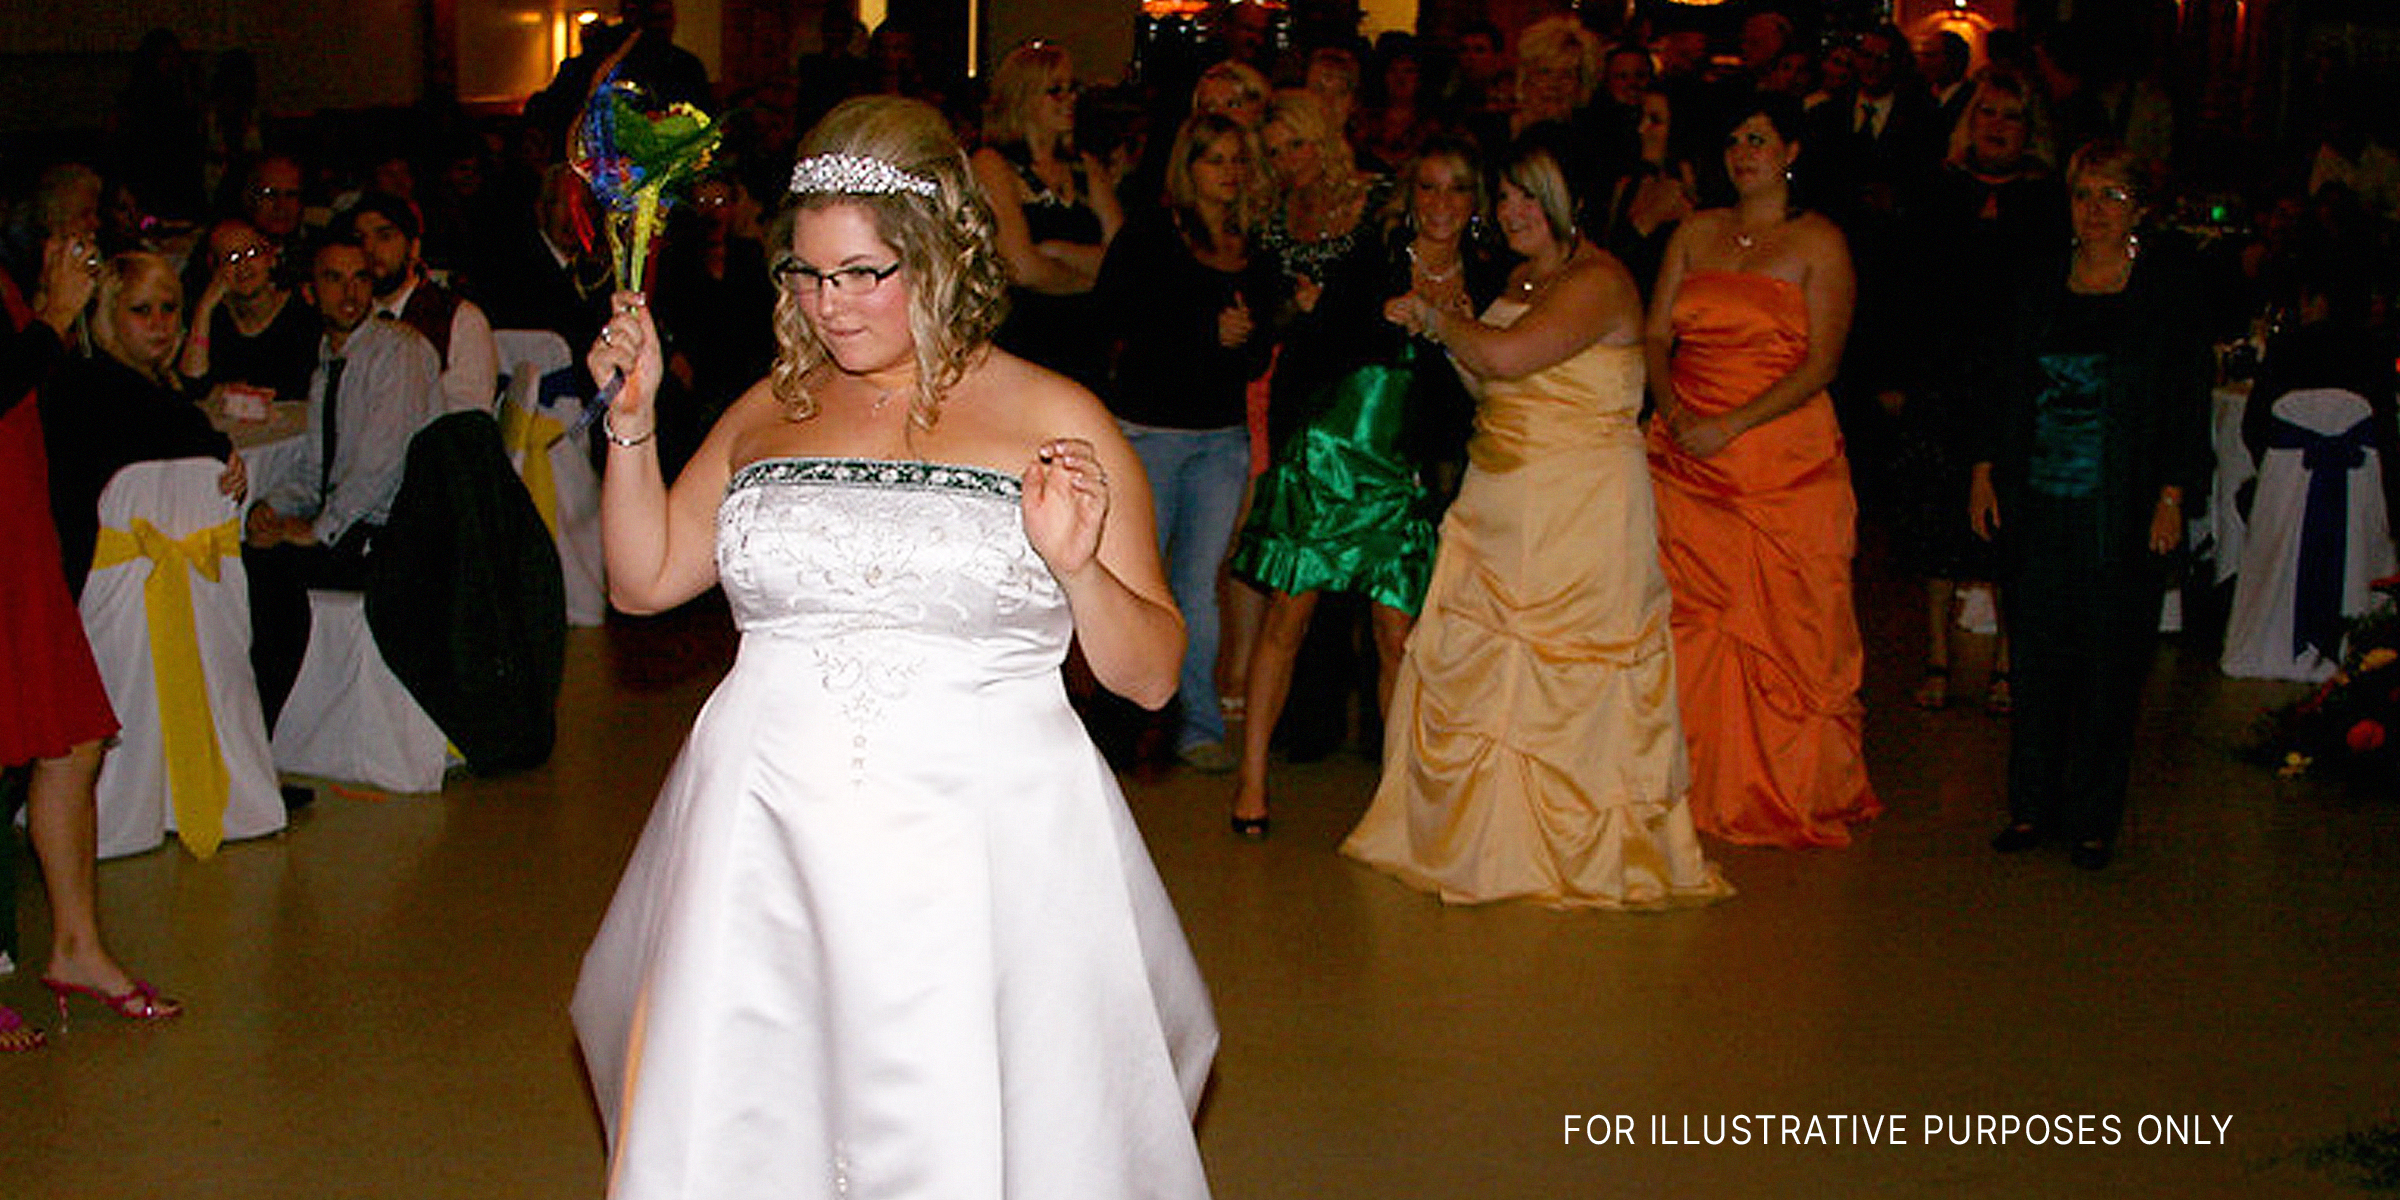 Bride dancing | Source: flickr.com/(CC BY-SA 2.0) by Zeusandhera